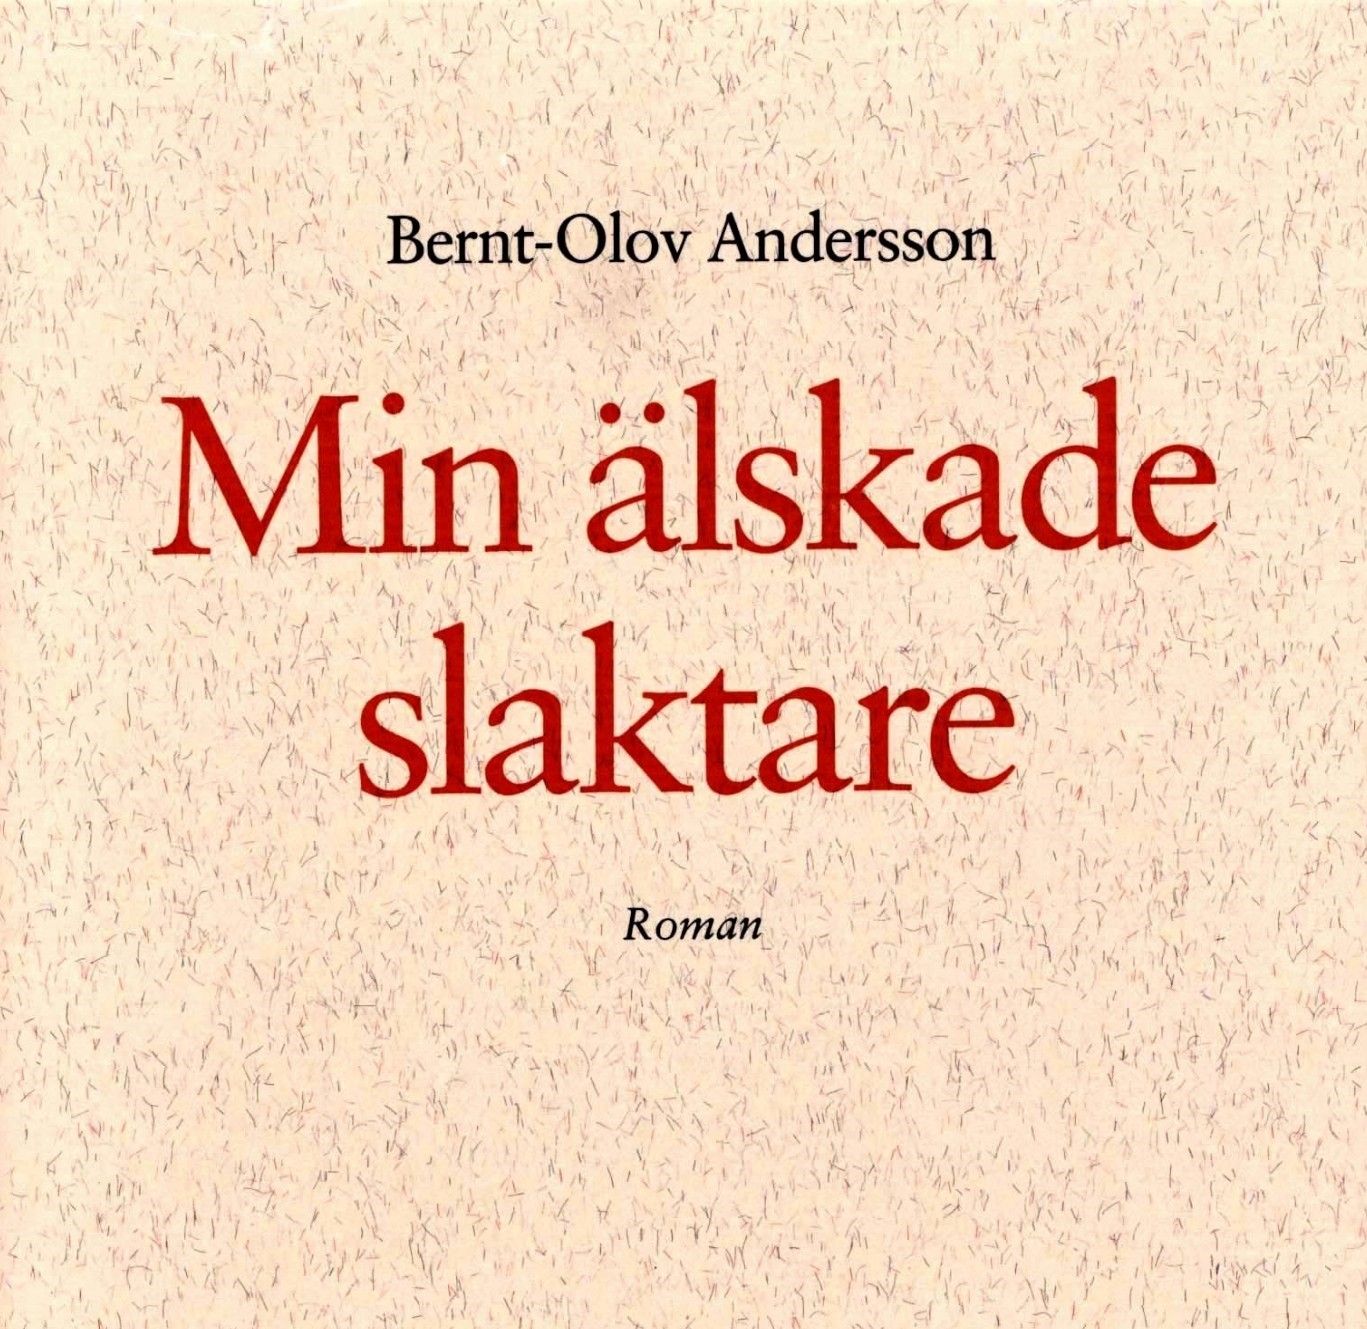 Min älskade slaktare, ljudbok av Bernt-Olov Andersson